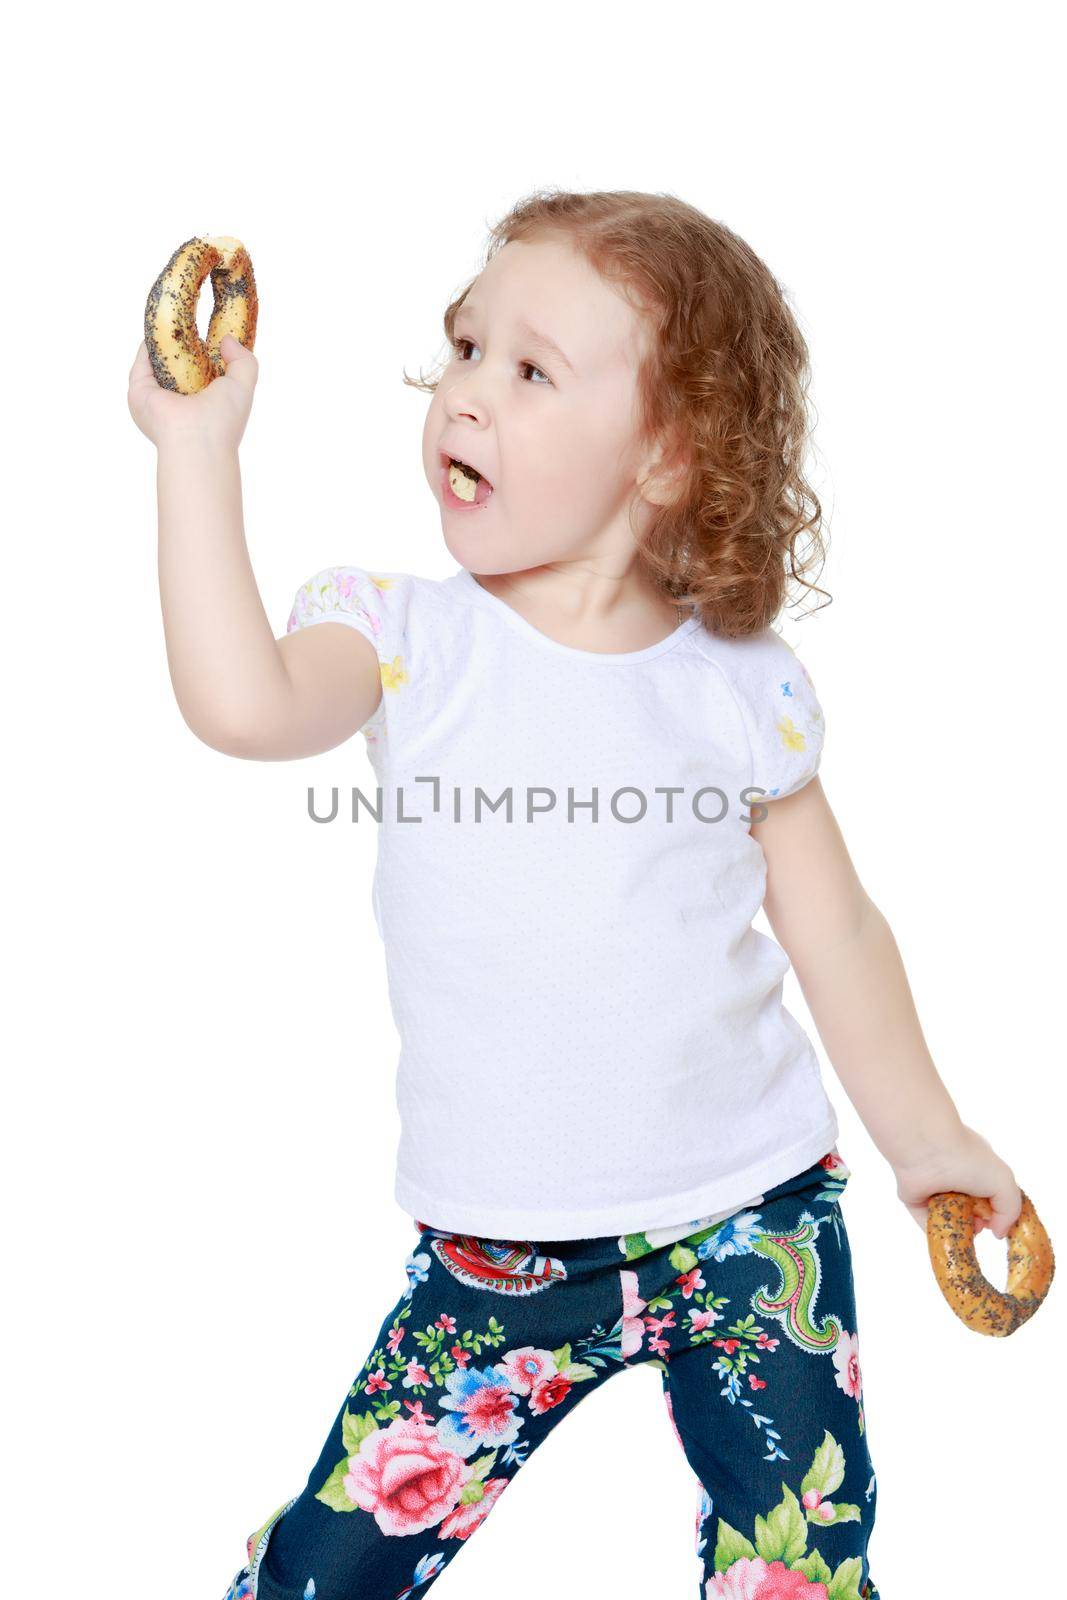 Little girl eating a bagel by kolesnikov_studio